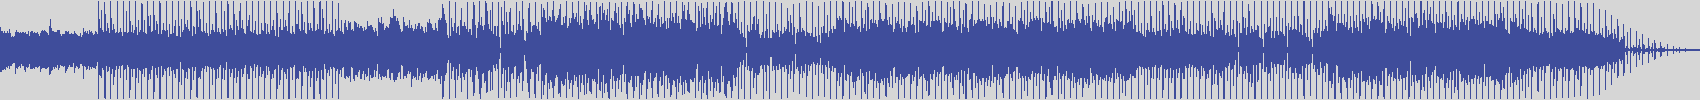 noclouds_chillout [NOC143] Vin Laine - Blueprint [Orange Chill Mix] audio wave form